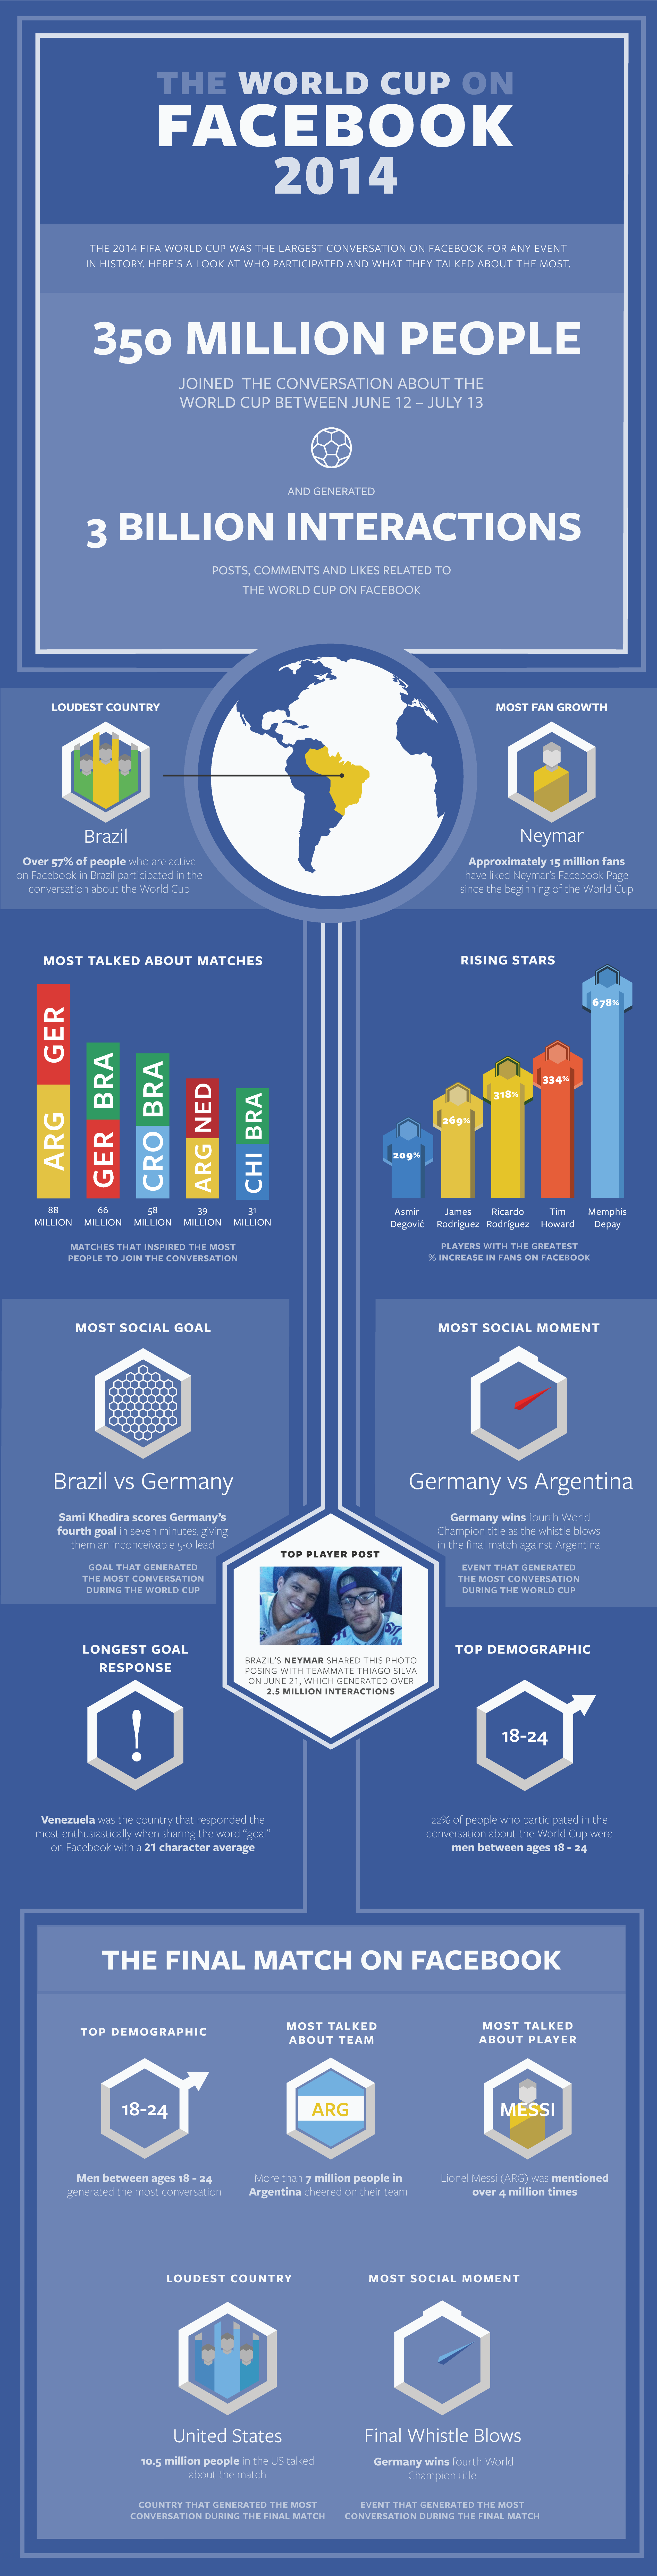 Facebook-Statistiken zur Fußball-Weltmeisterschaft 2014